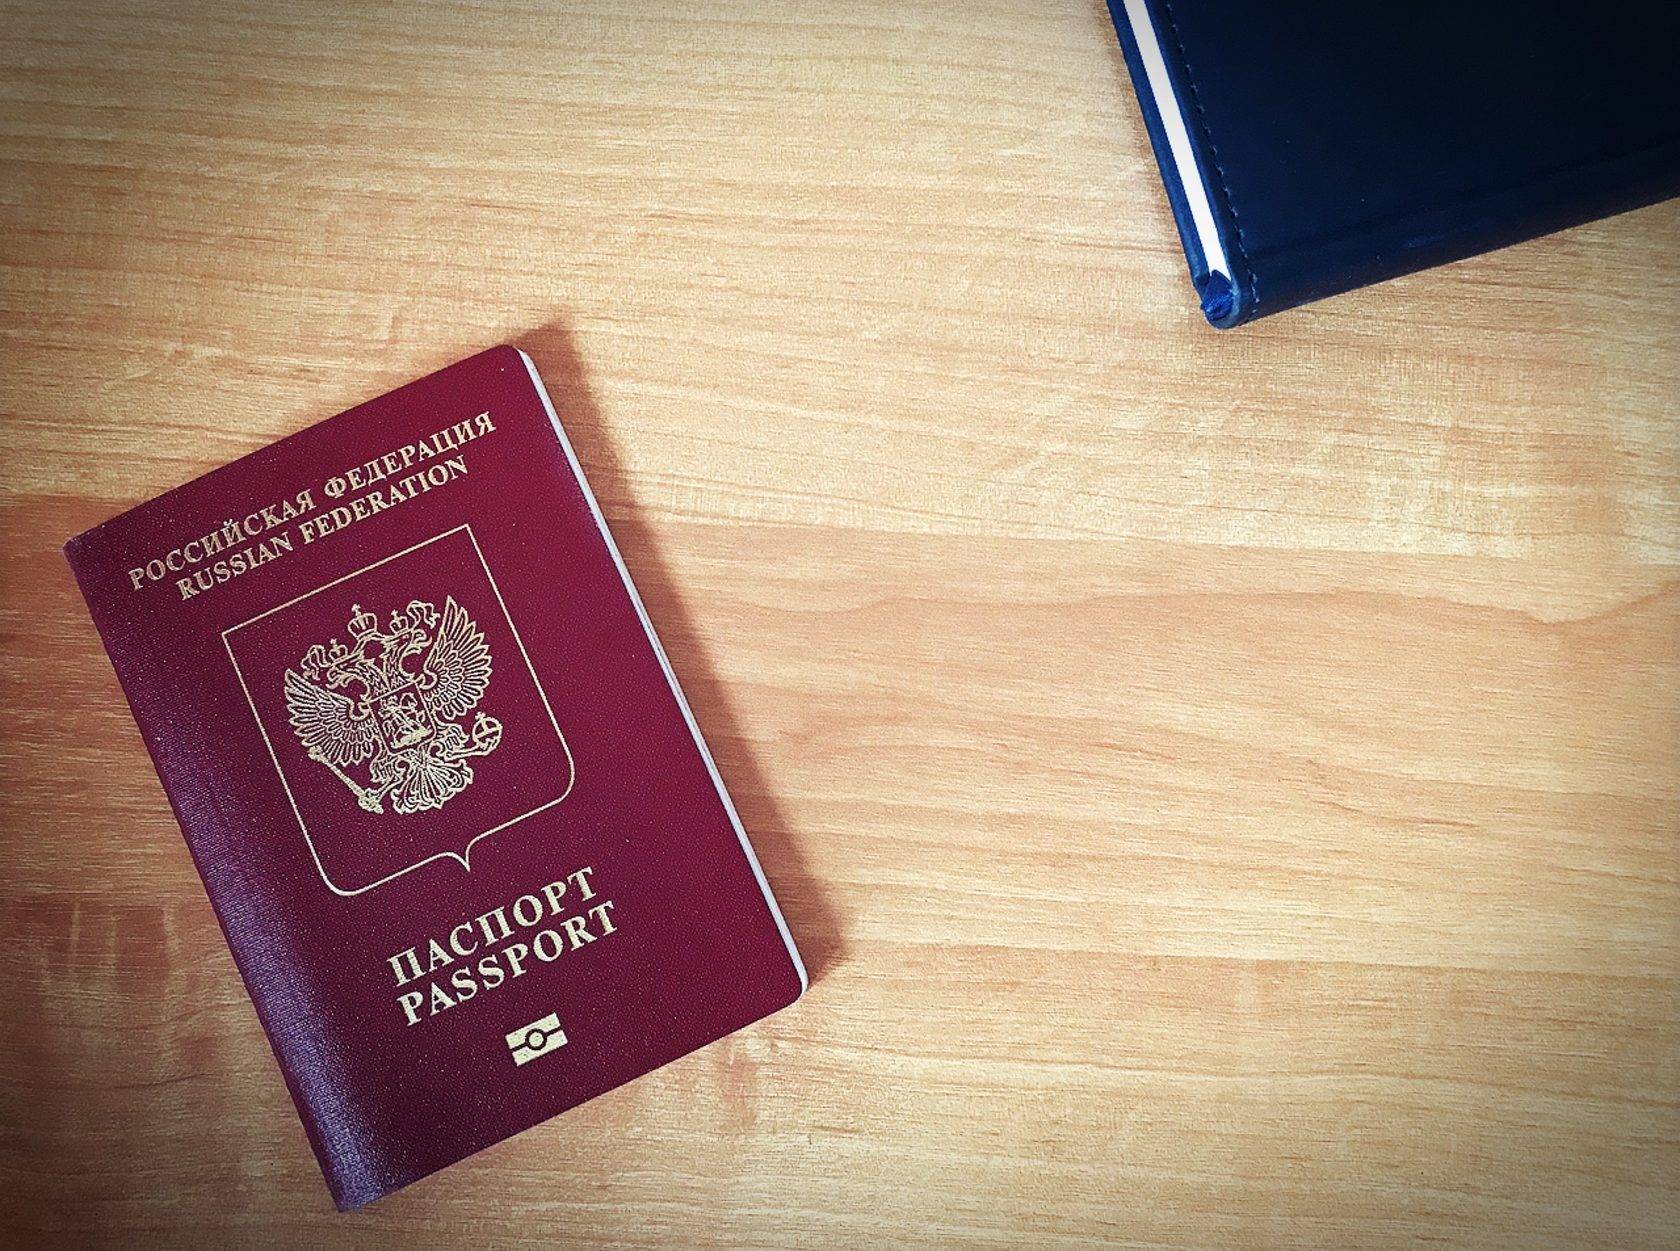 Получение чешского гражданства в 2021 году, требования, стоимость, документы | provizu.ru